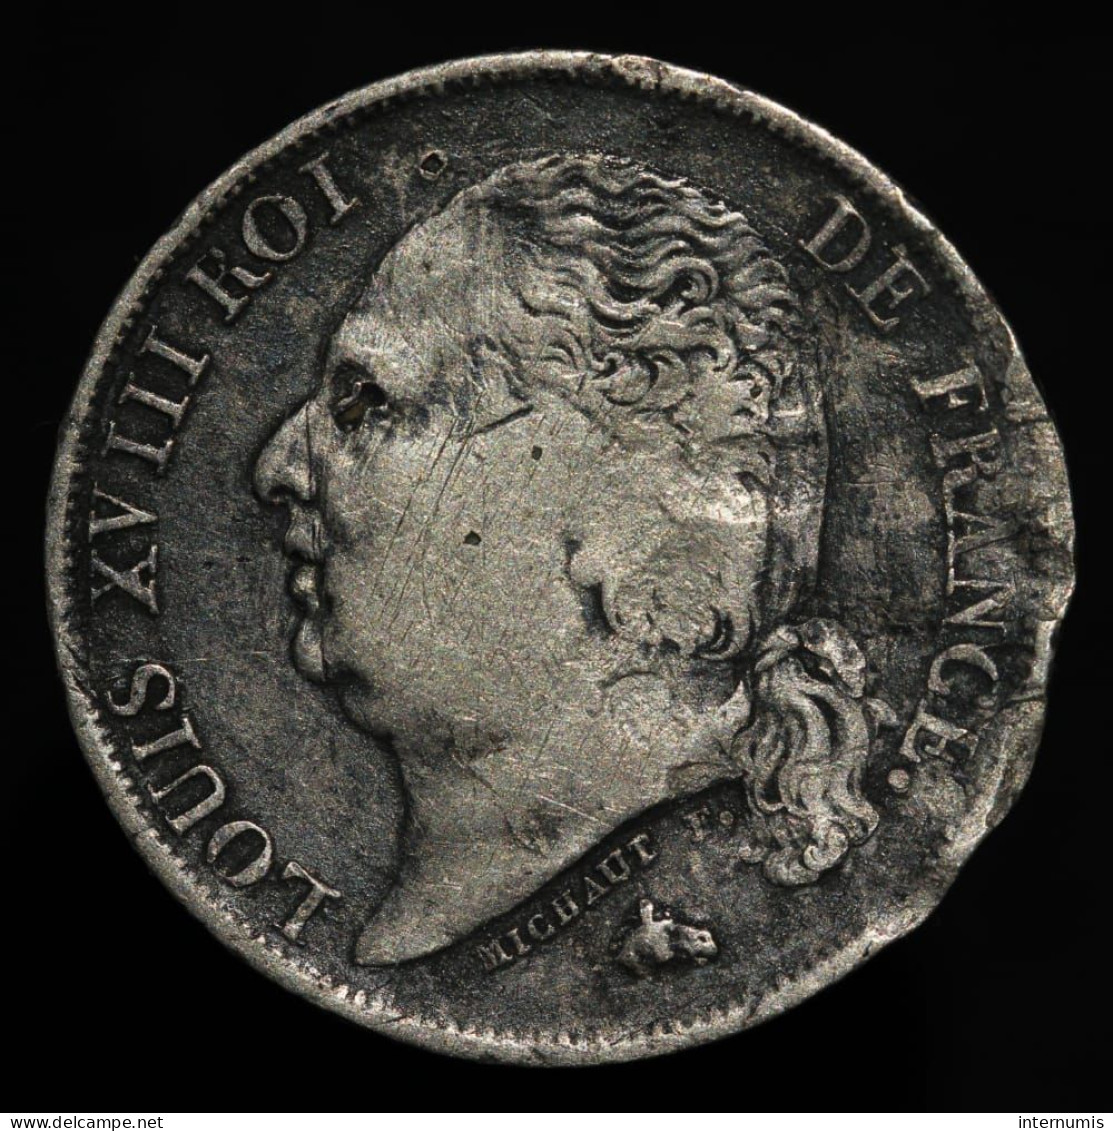 RARE - France, Louis XVIII, 1 Franc, 1817, H - La Rochelle, Argent (Silver), KM#709.4, G.449, F.206/12 - 1 Franc